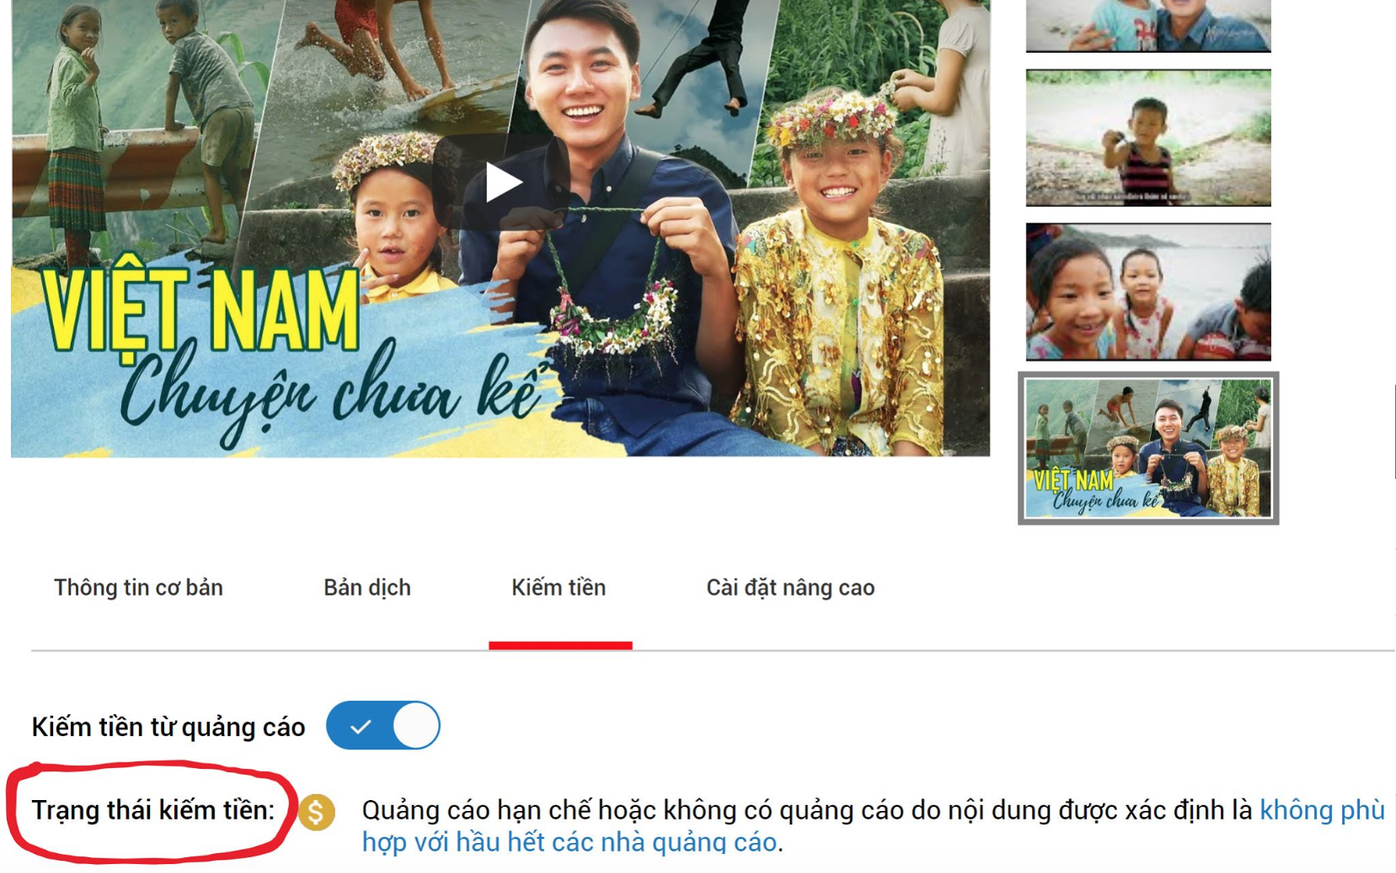 Khoai Lang Thang bị Youtube tắt trạng thái kiếm tiền, chia sẻ buồn rầu vì làm nội dung tử tế nhưng lại bị hạn chế người xem